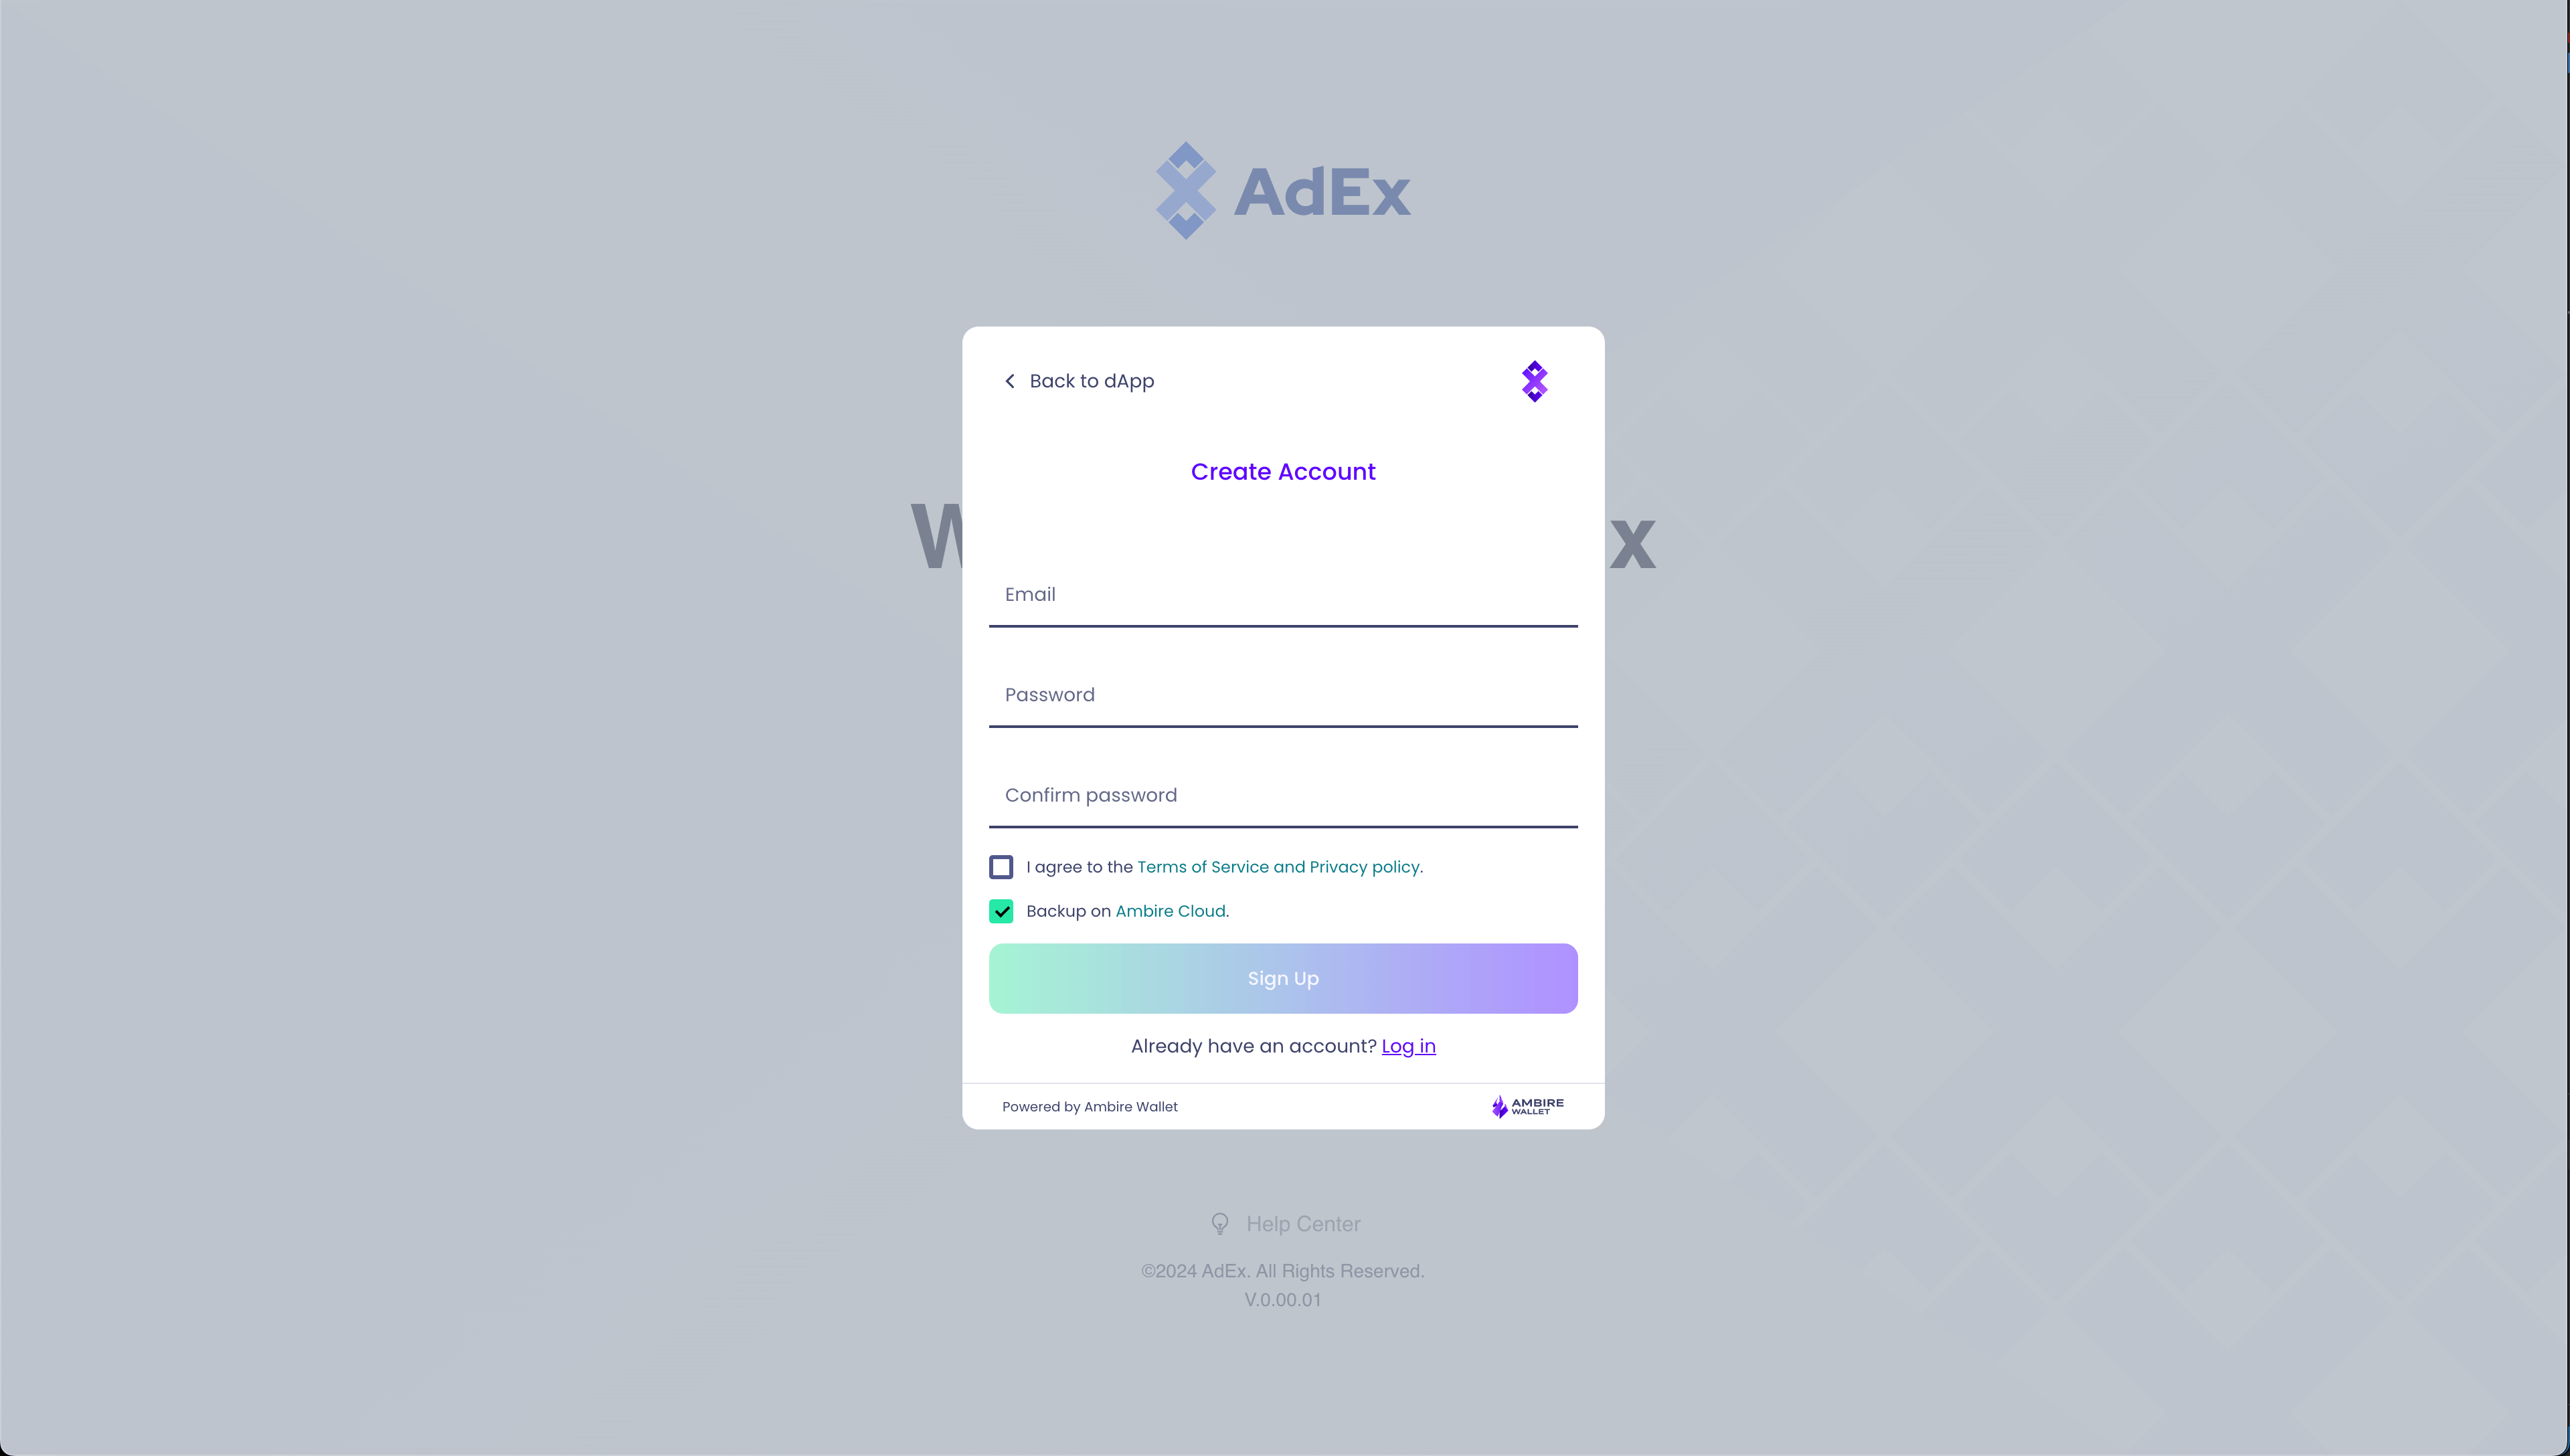 AdEx account creation via the Ambire Wallet Login SDK